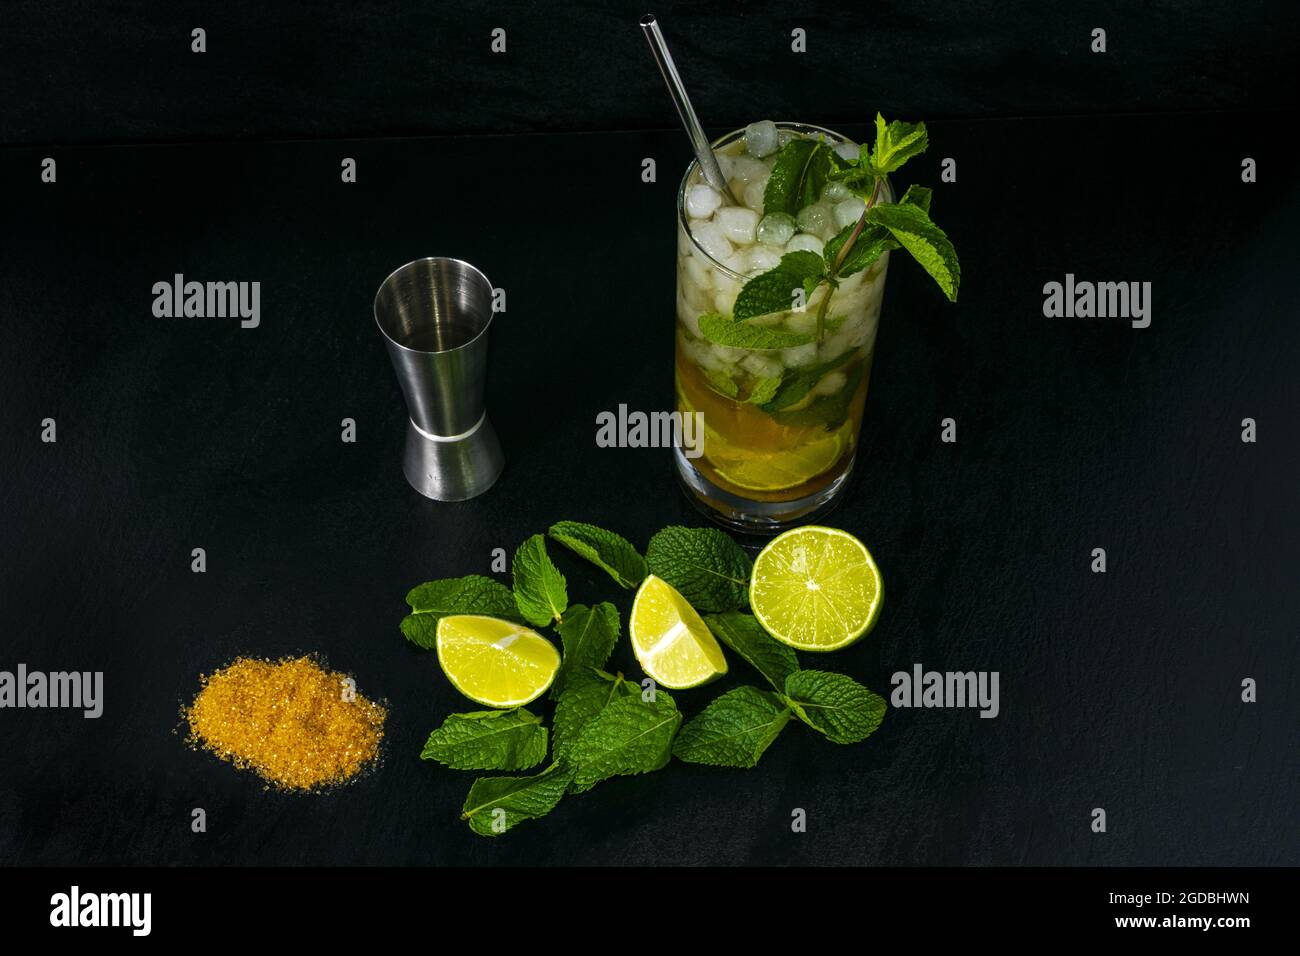 Primo piano di ingredienti freschi per preparare un cocktail Mojito isolato su sfondo scuro Foto Stock